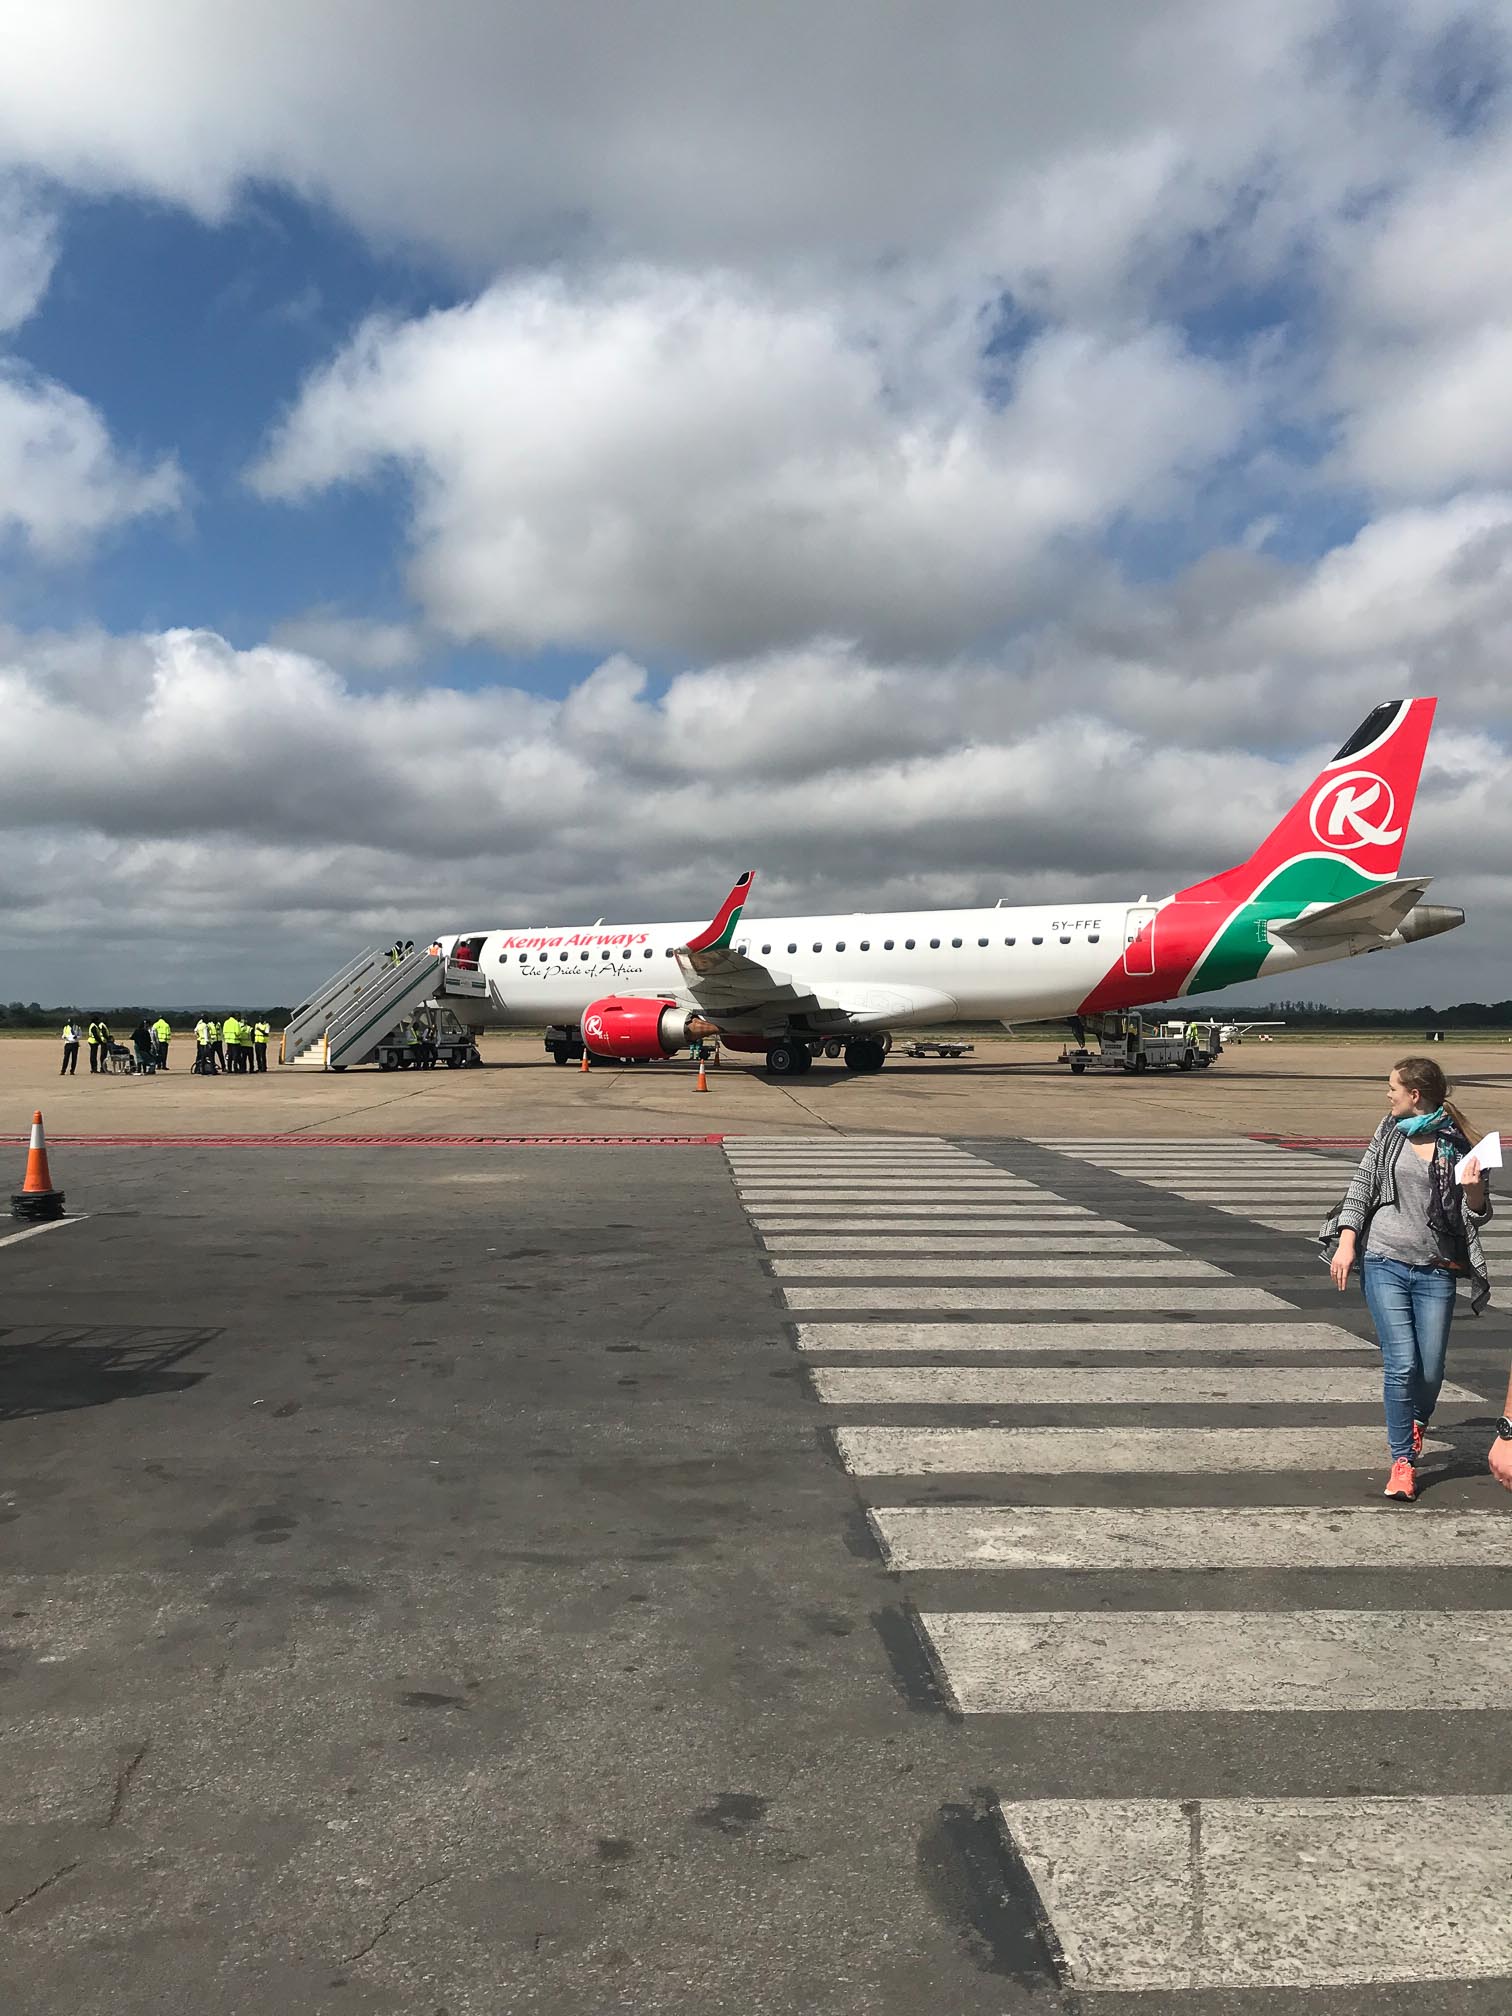 Unsere Reise begann am 22.04.2018. Von Köln aus ging es über Paris zunächst nach Nairobi. Von dort brachte uns Kenia Airways in einem weiteren rund dreistündigen Flug nach Lusaka, Sambia.